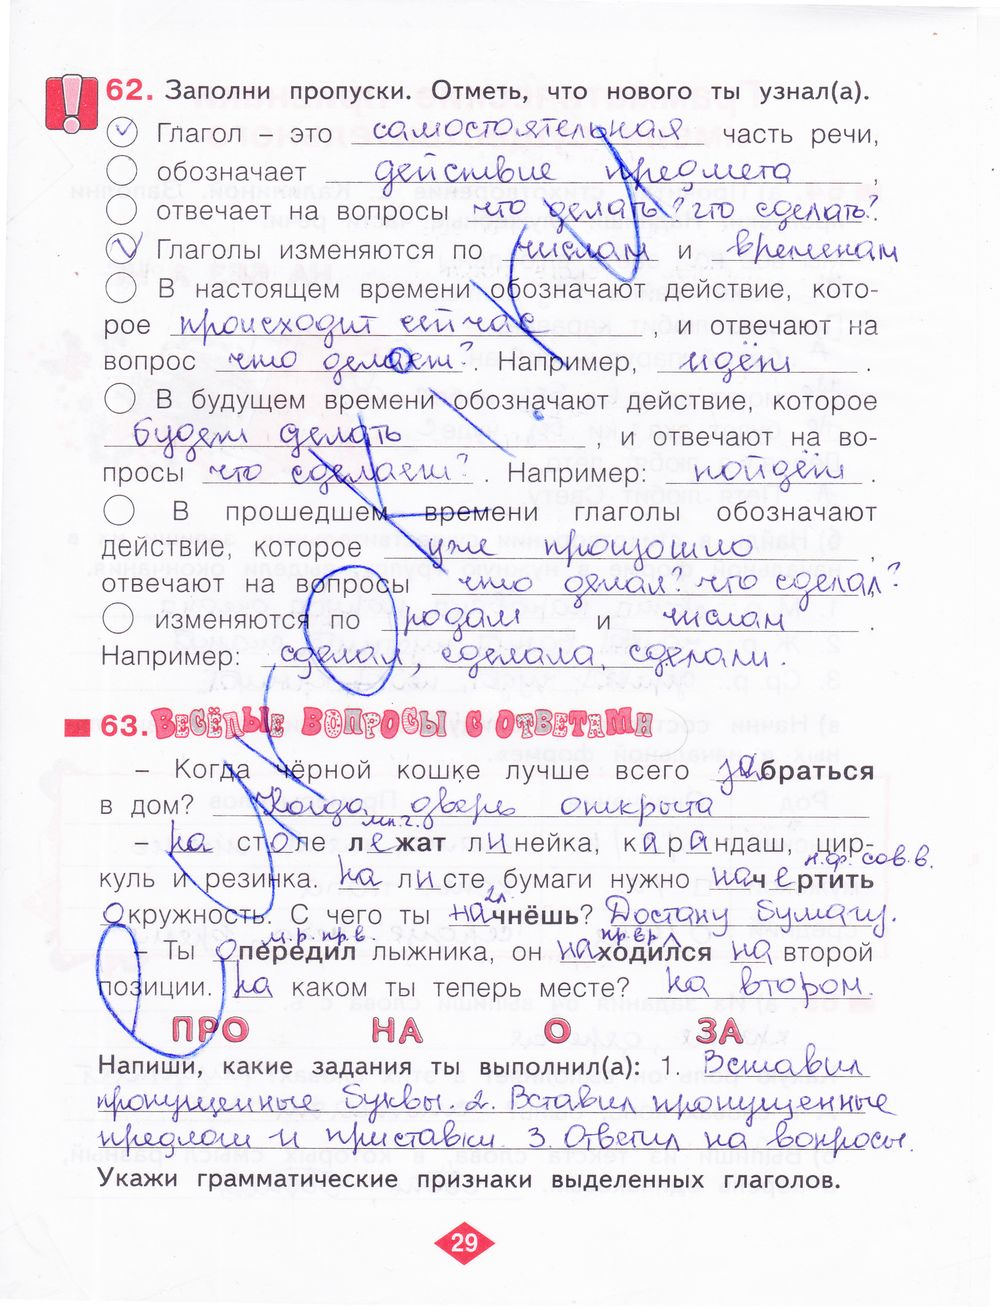 ГДЗ Русский язык 3 класс - стр. 29